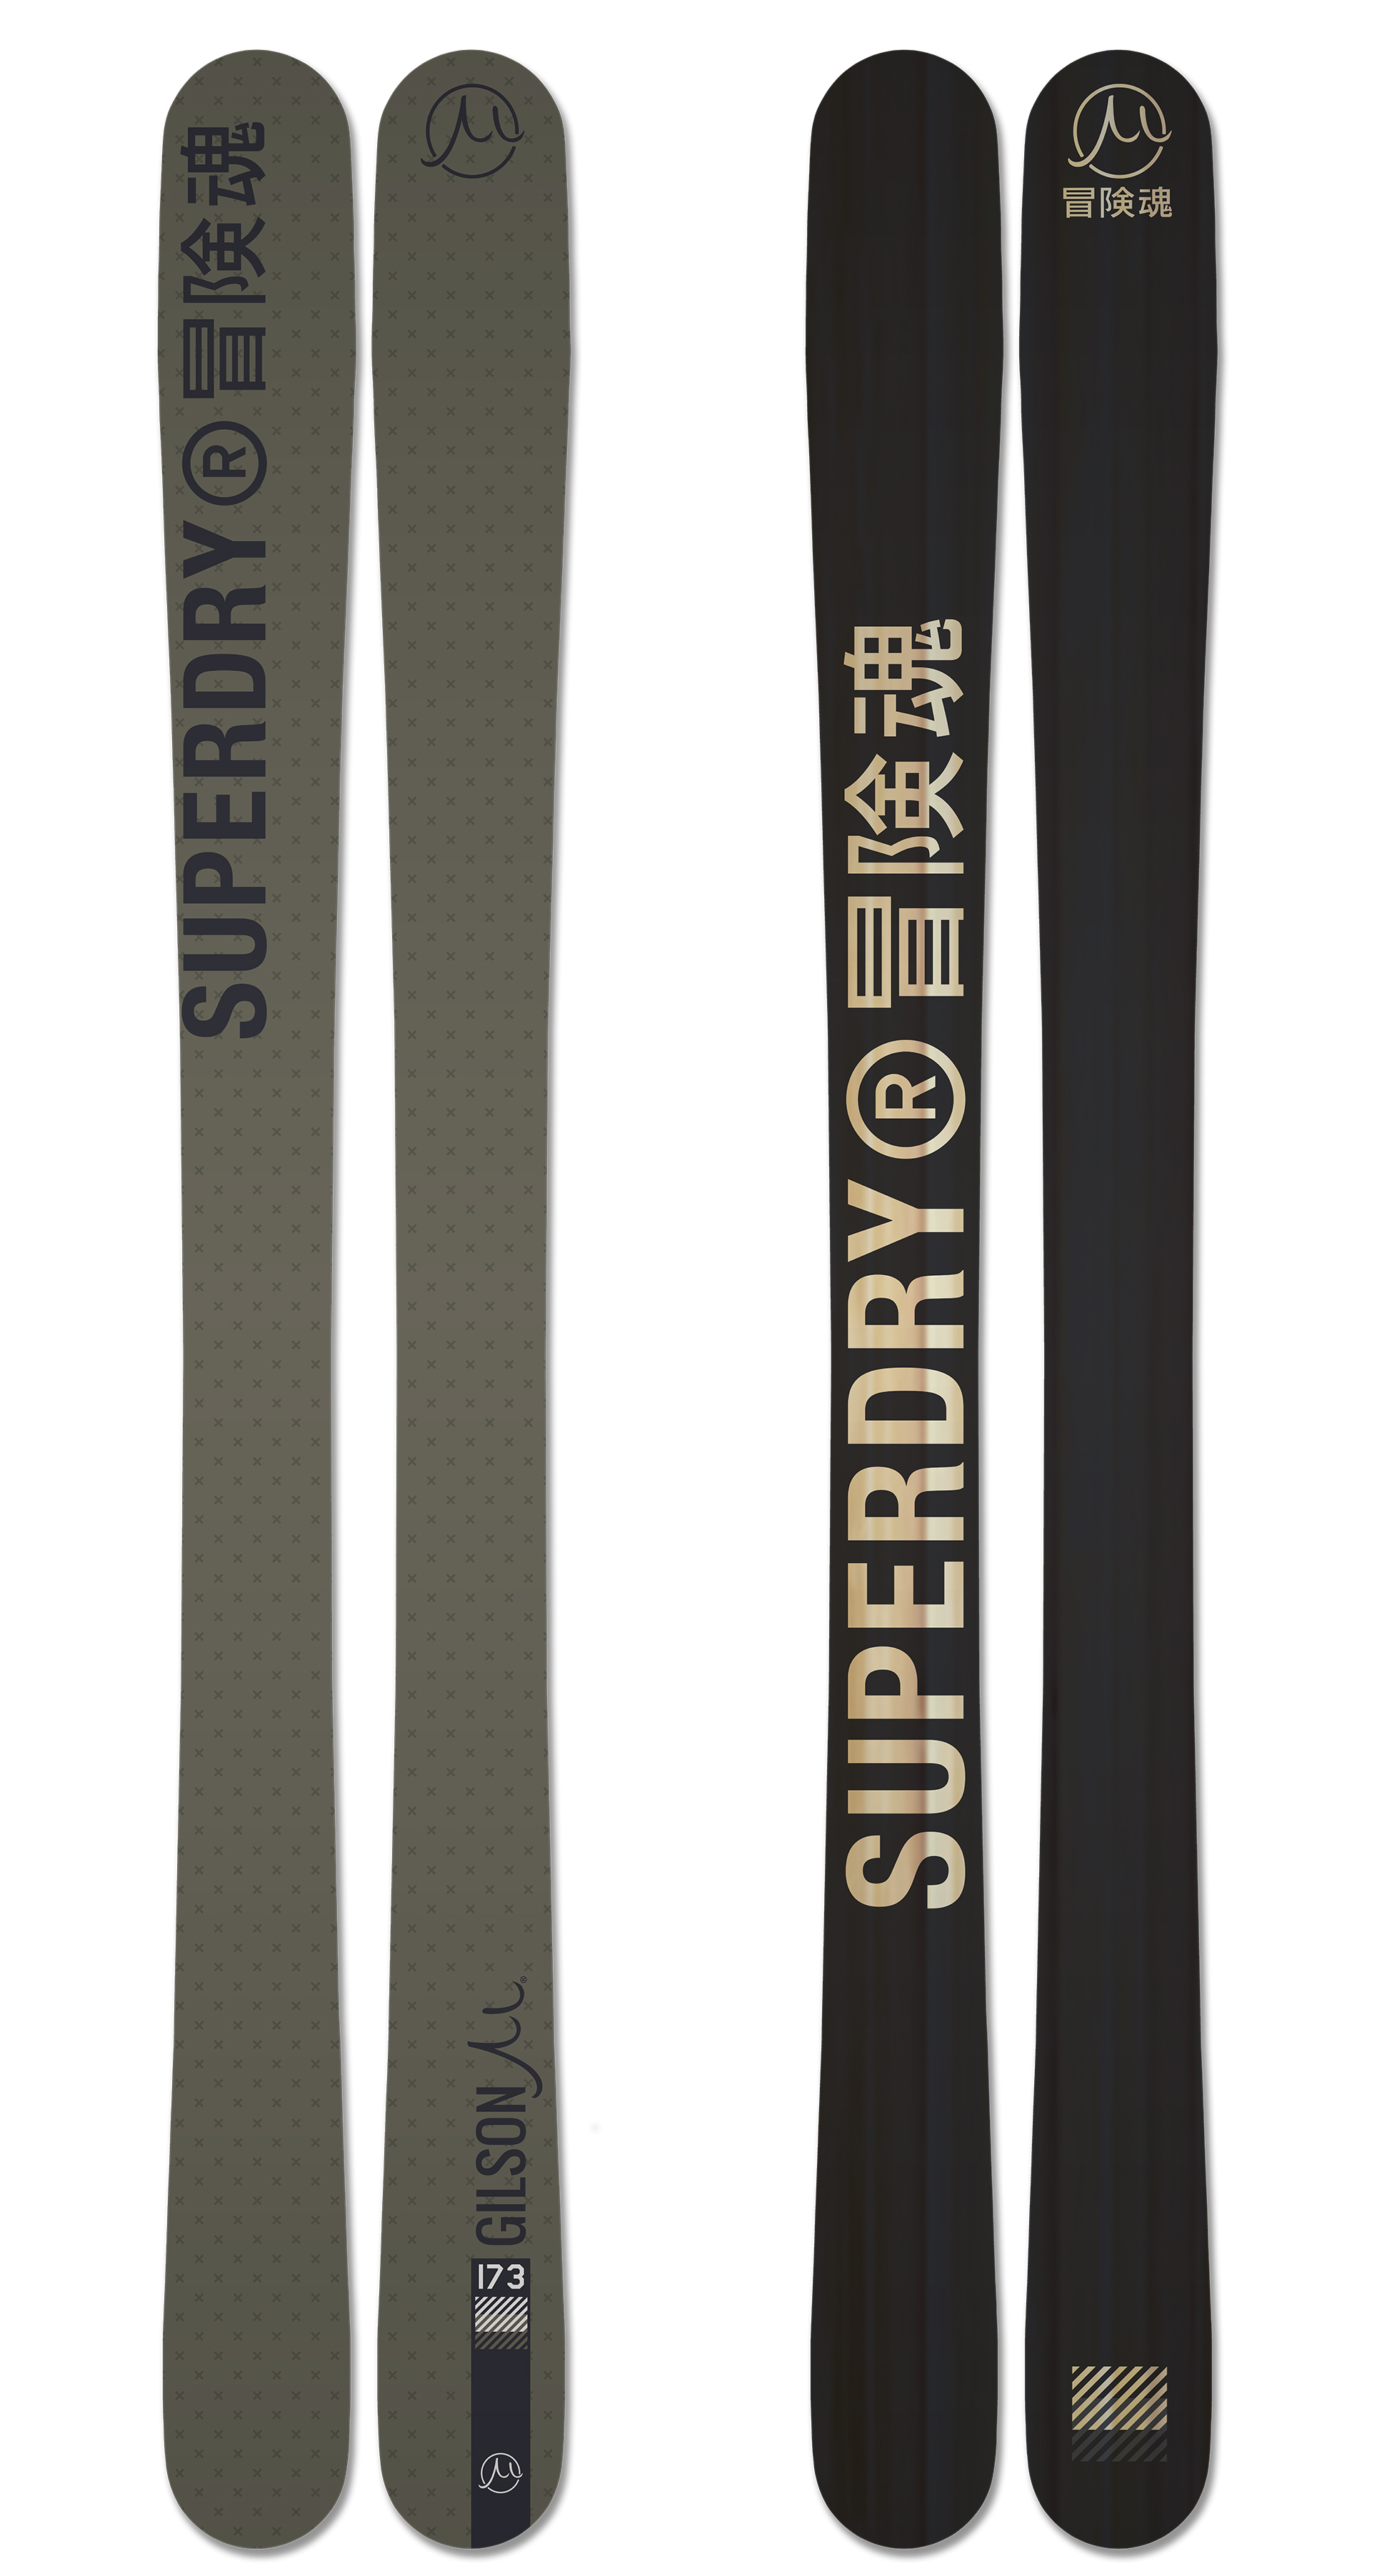 Superdry gravity black olive skis large